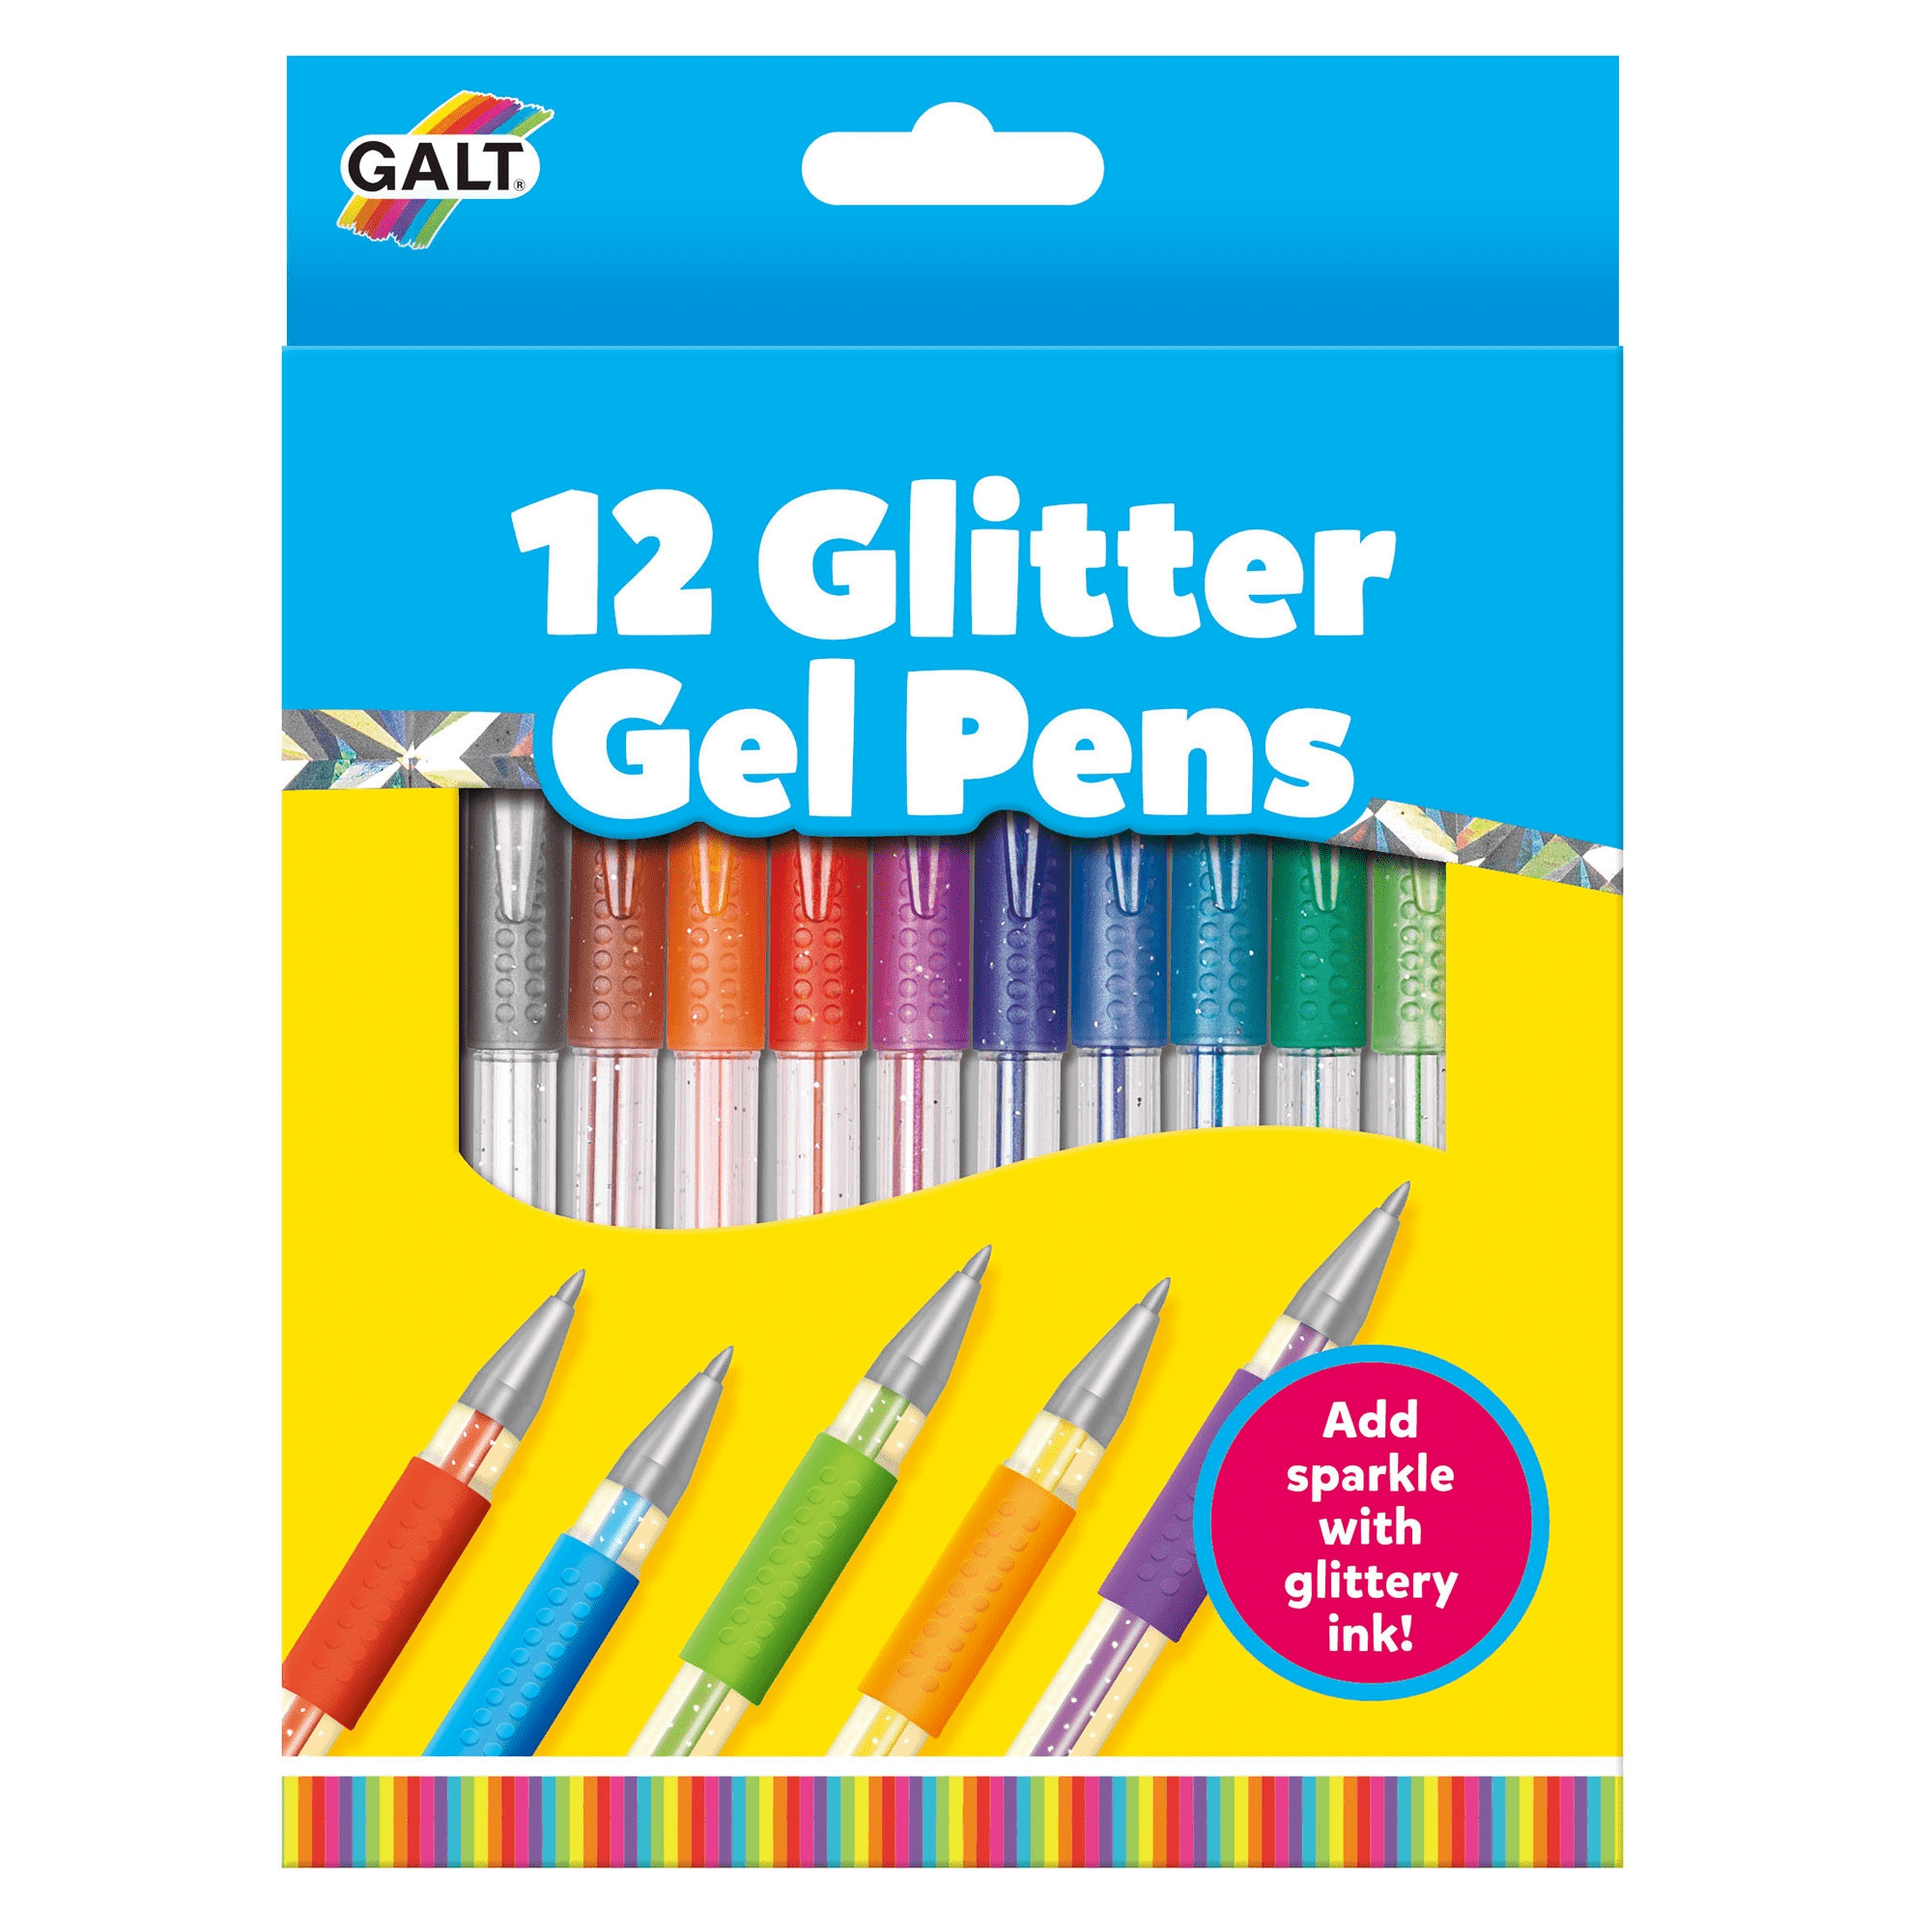 Galt Glitter Gel Pens 12pk